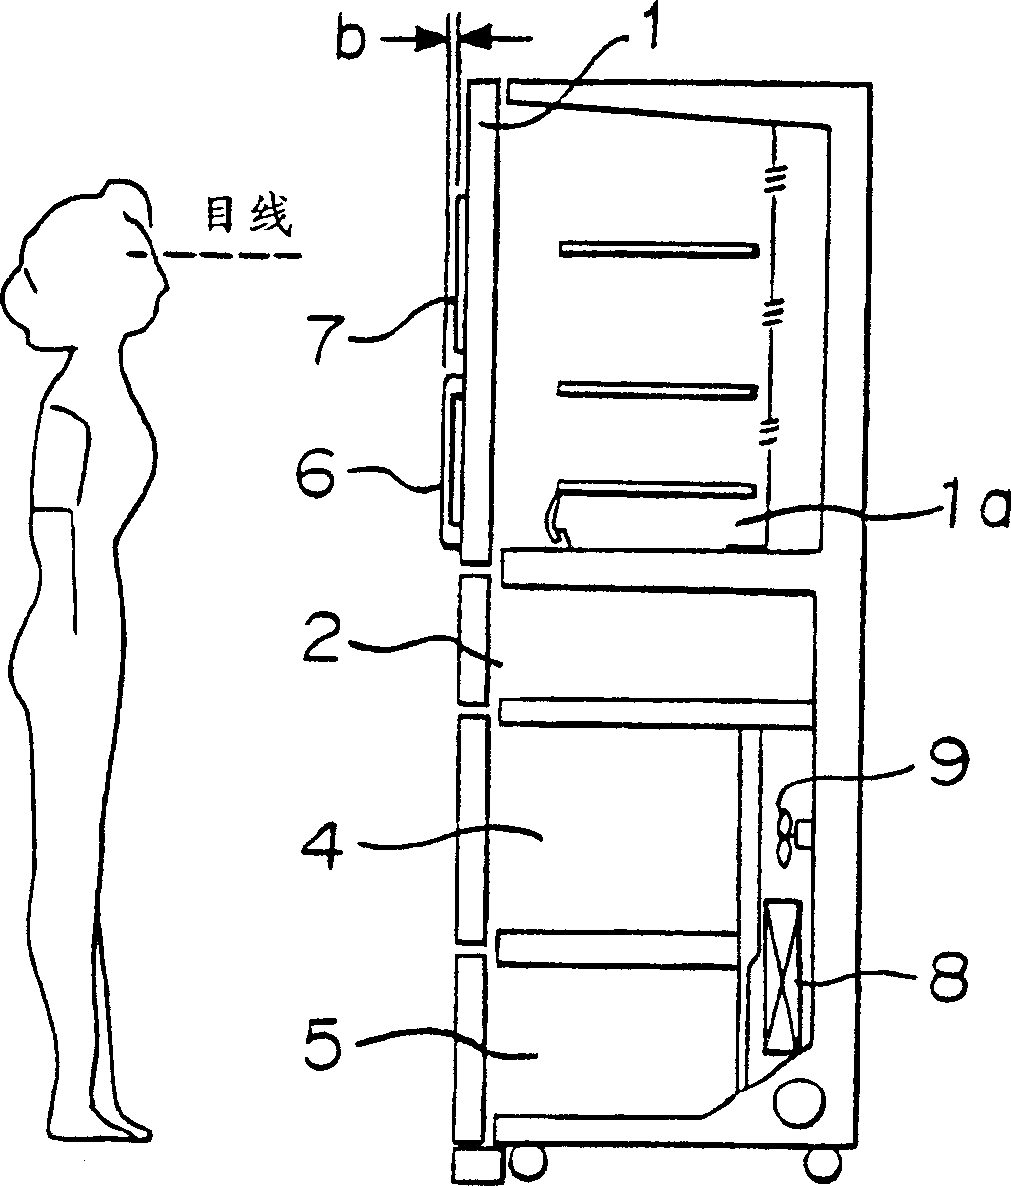 Refrigerator and method of operating refrigerator